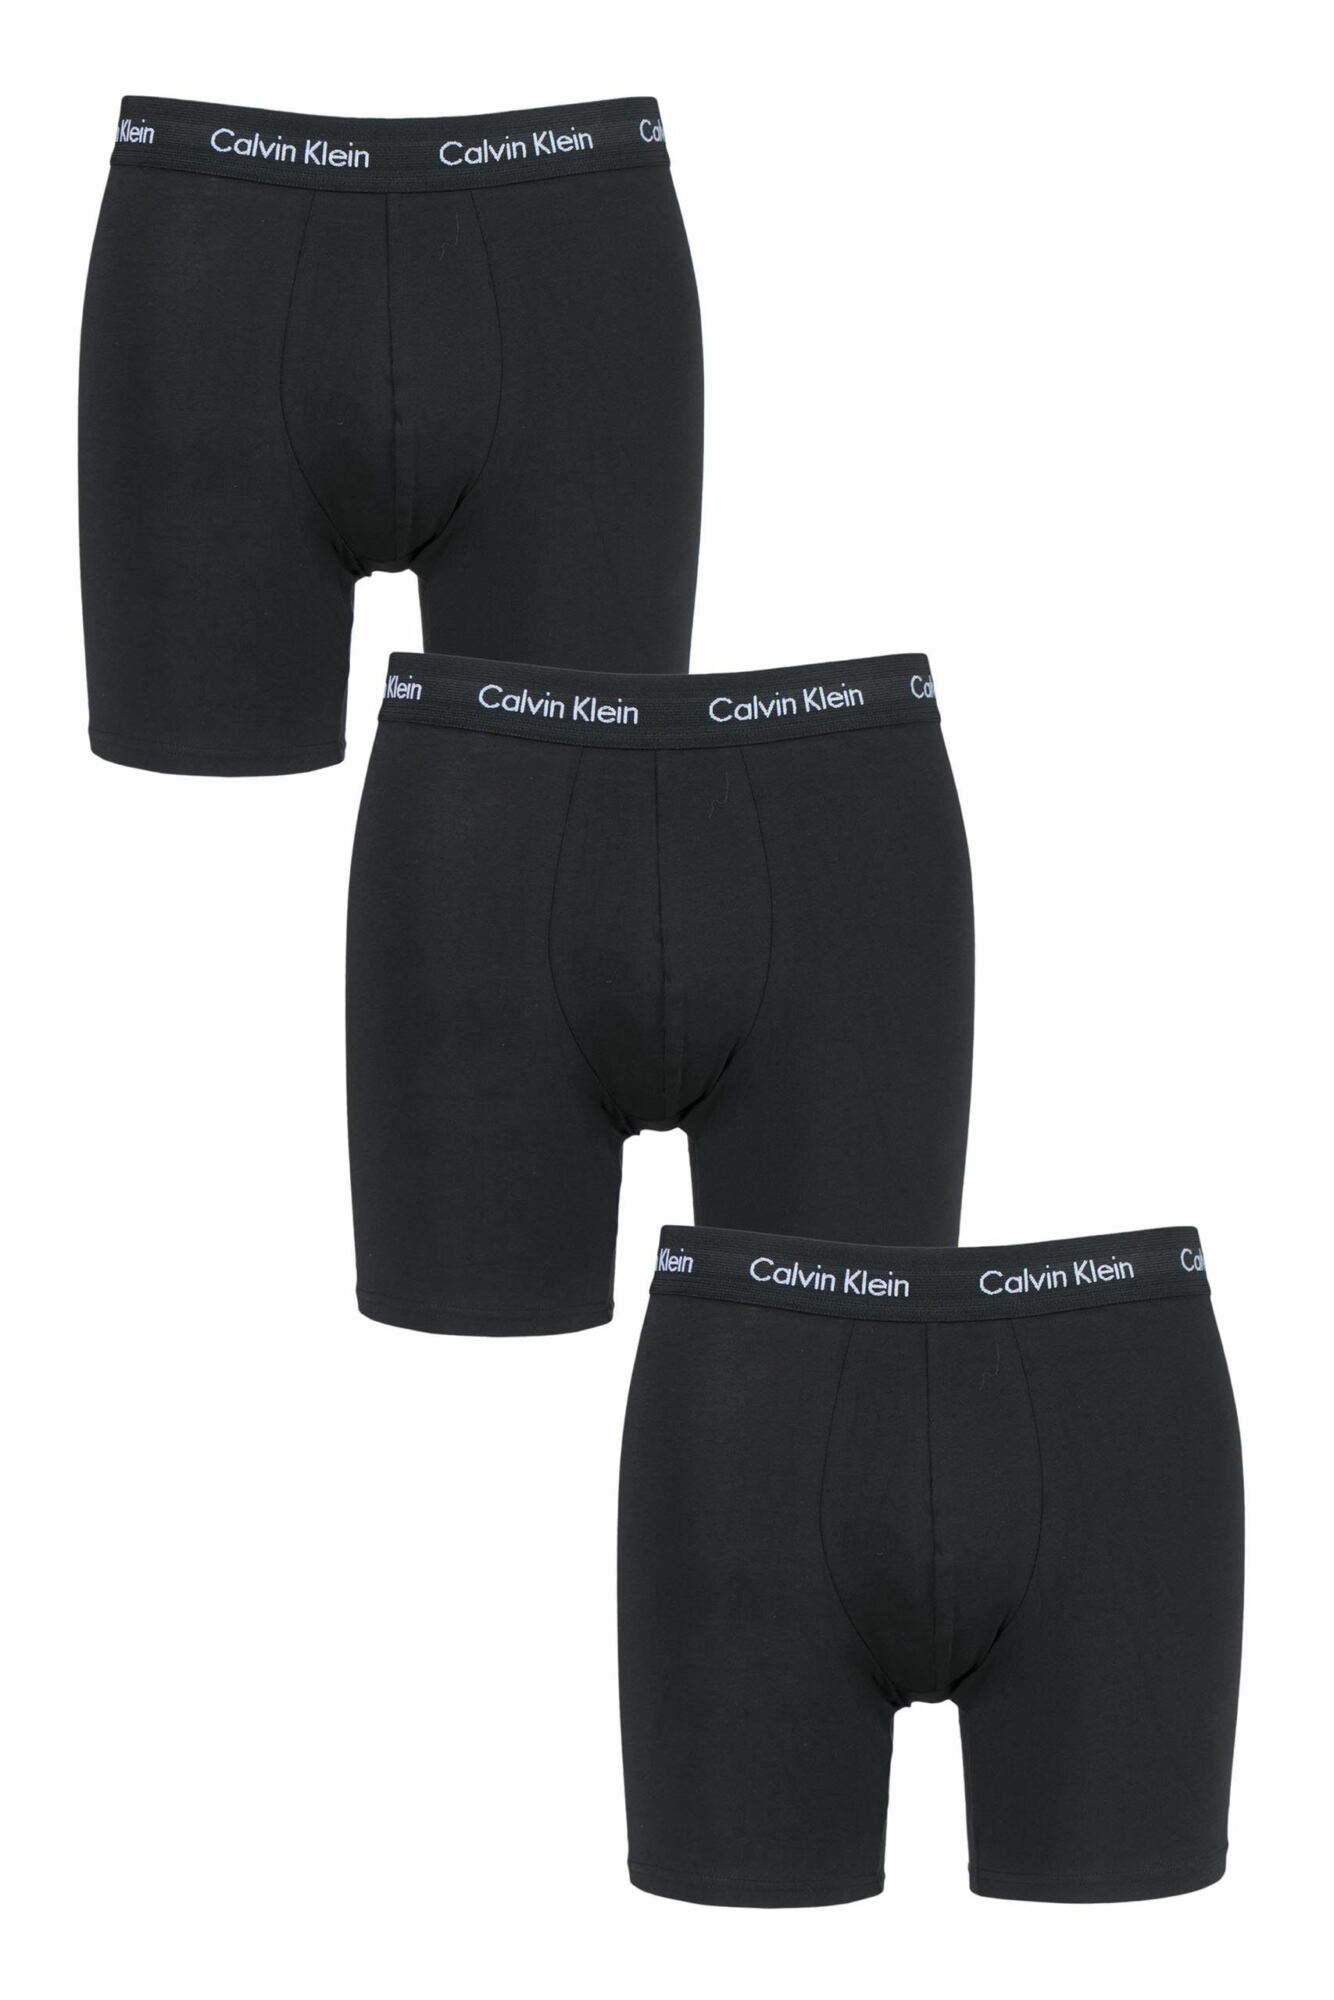 3 Pack Cotton Stretch Longer Leg Boxer Brief Shorts Men's - Calvin Klein